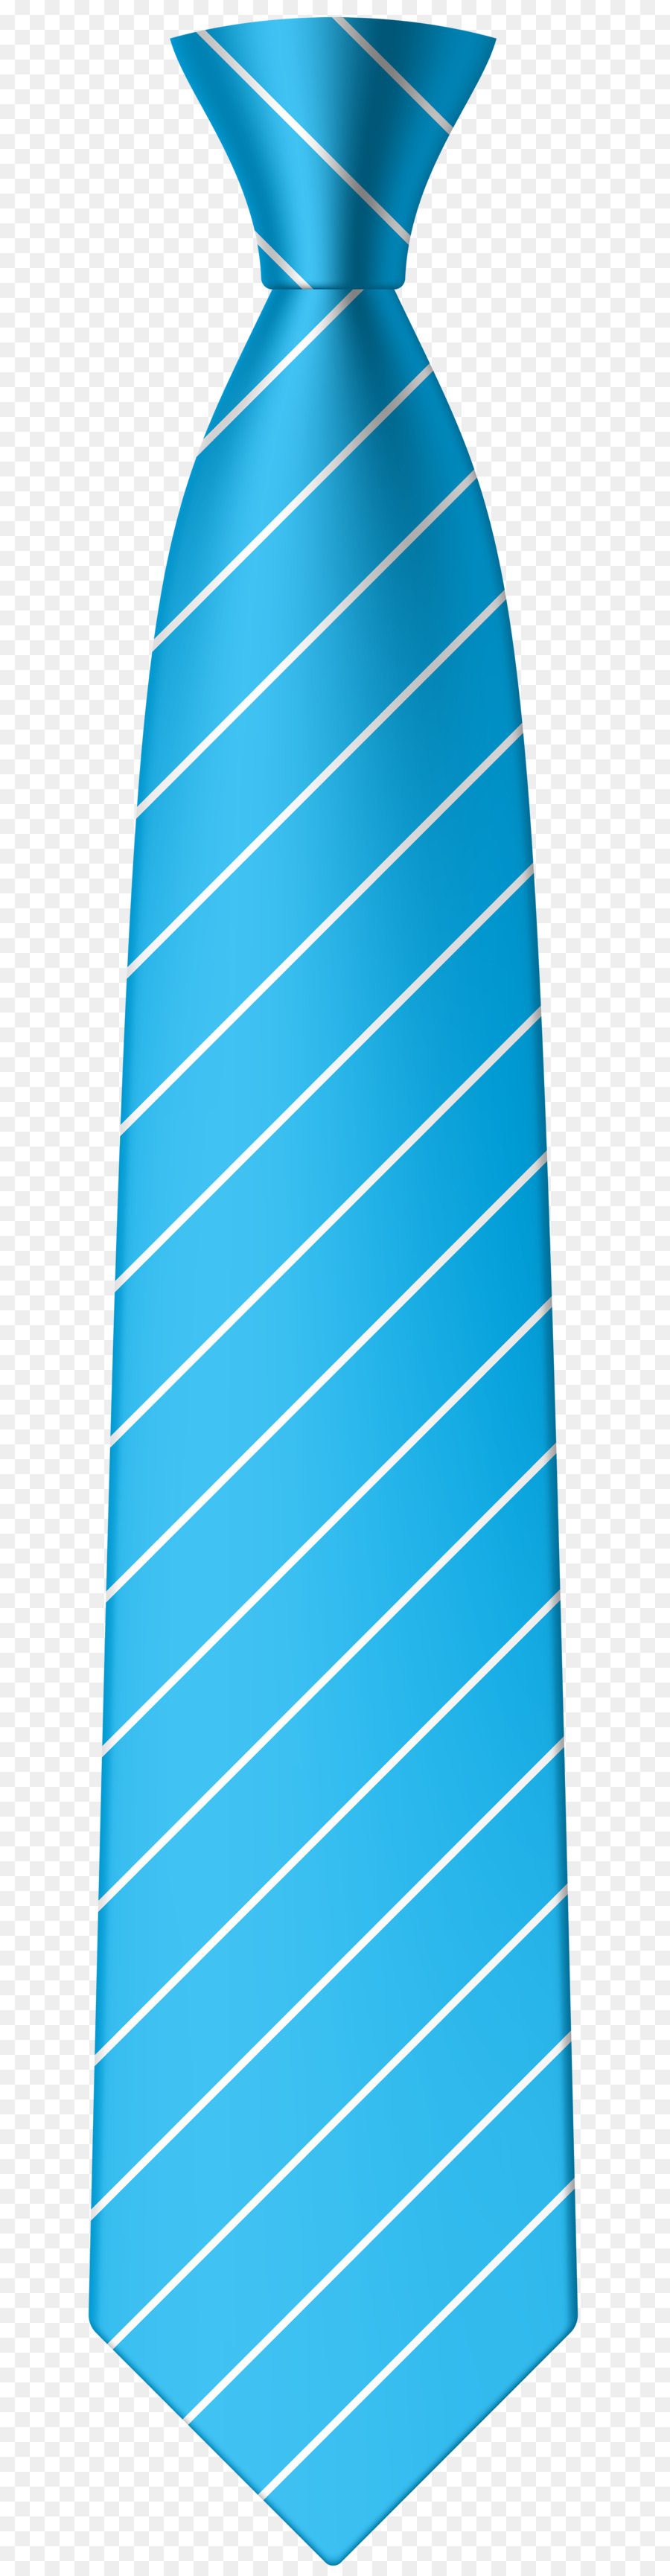 Cravatta cravatta Tie clip Clip art - cartone dipinto casco per ottenere disegni mo